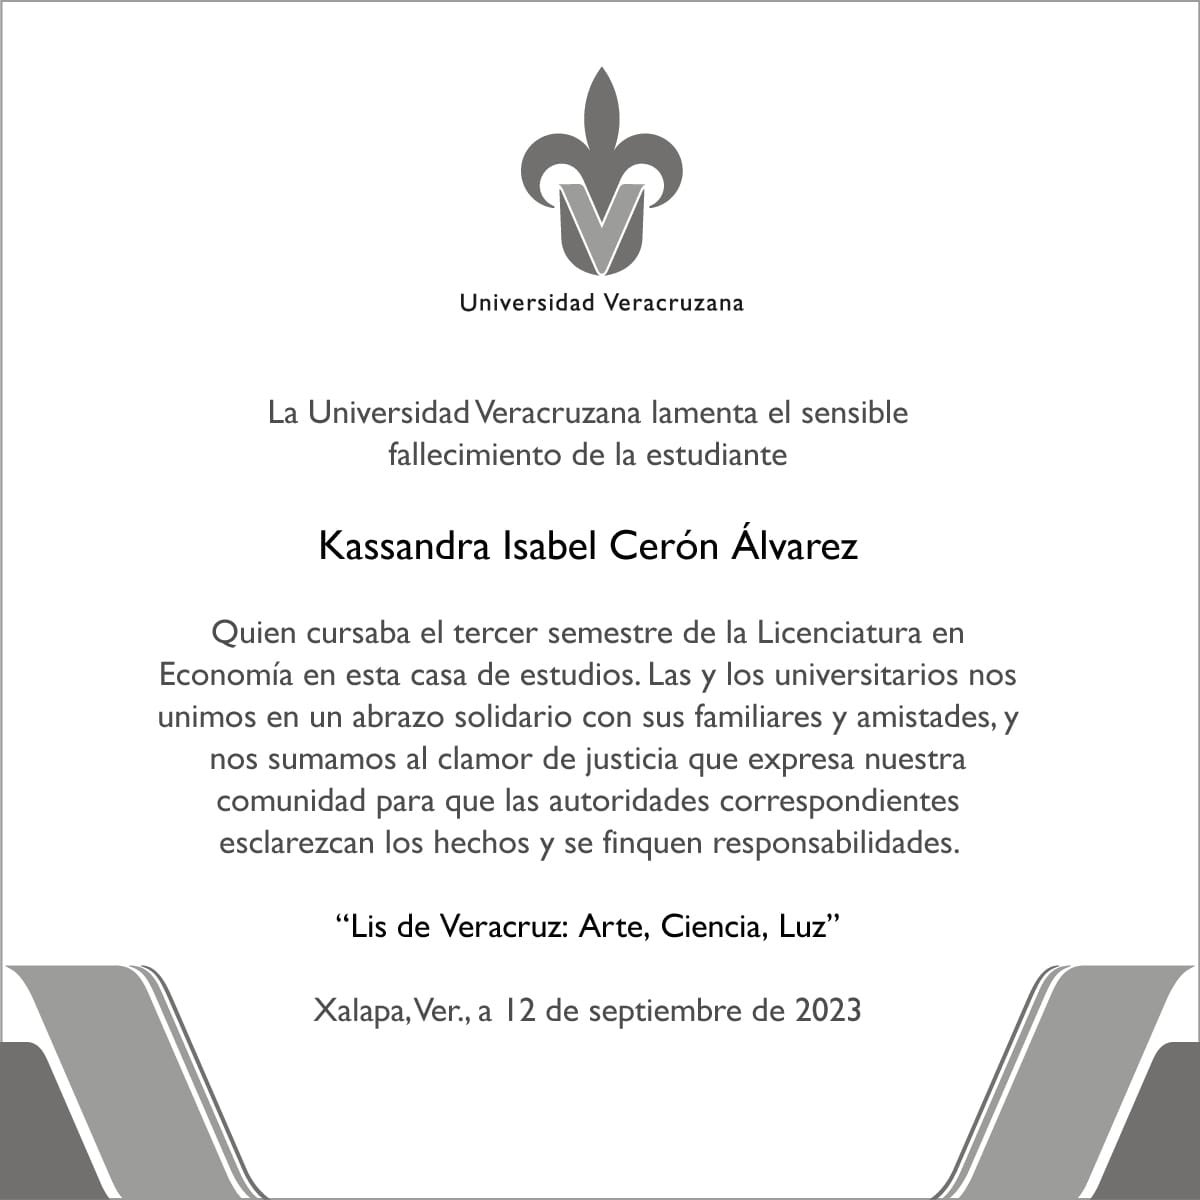 La Universidad Veracruzana lamenta el fallecimiento de Kassandra Isabel Cerón Álvarez, quien fuera estudiante de la Licenciatura en Economía en esta casa de estudios. Descanse en paz.